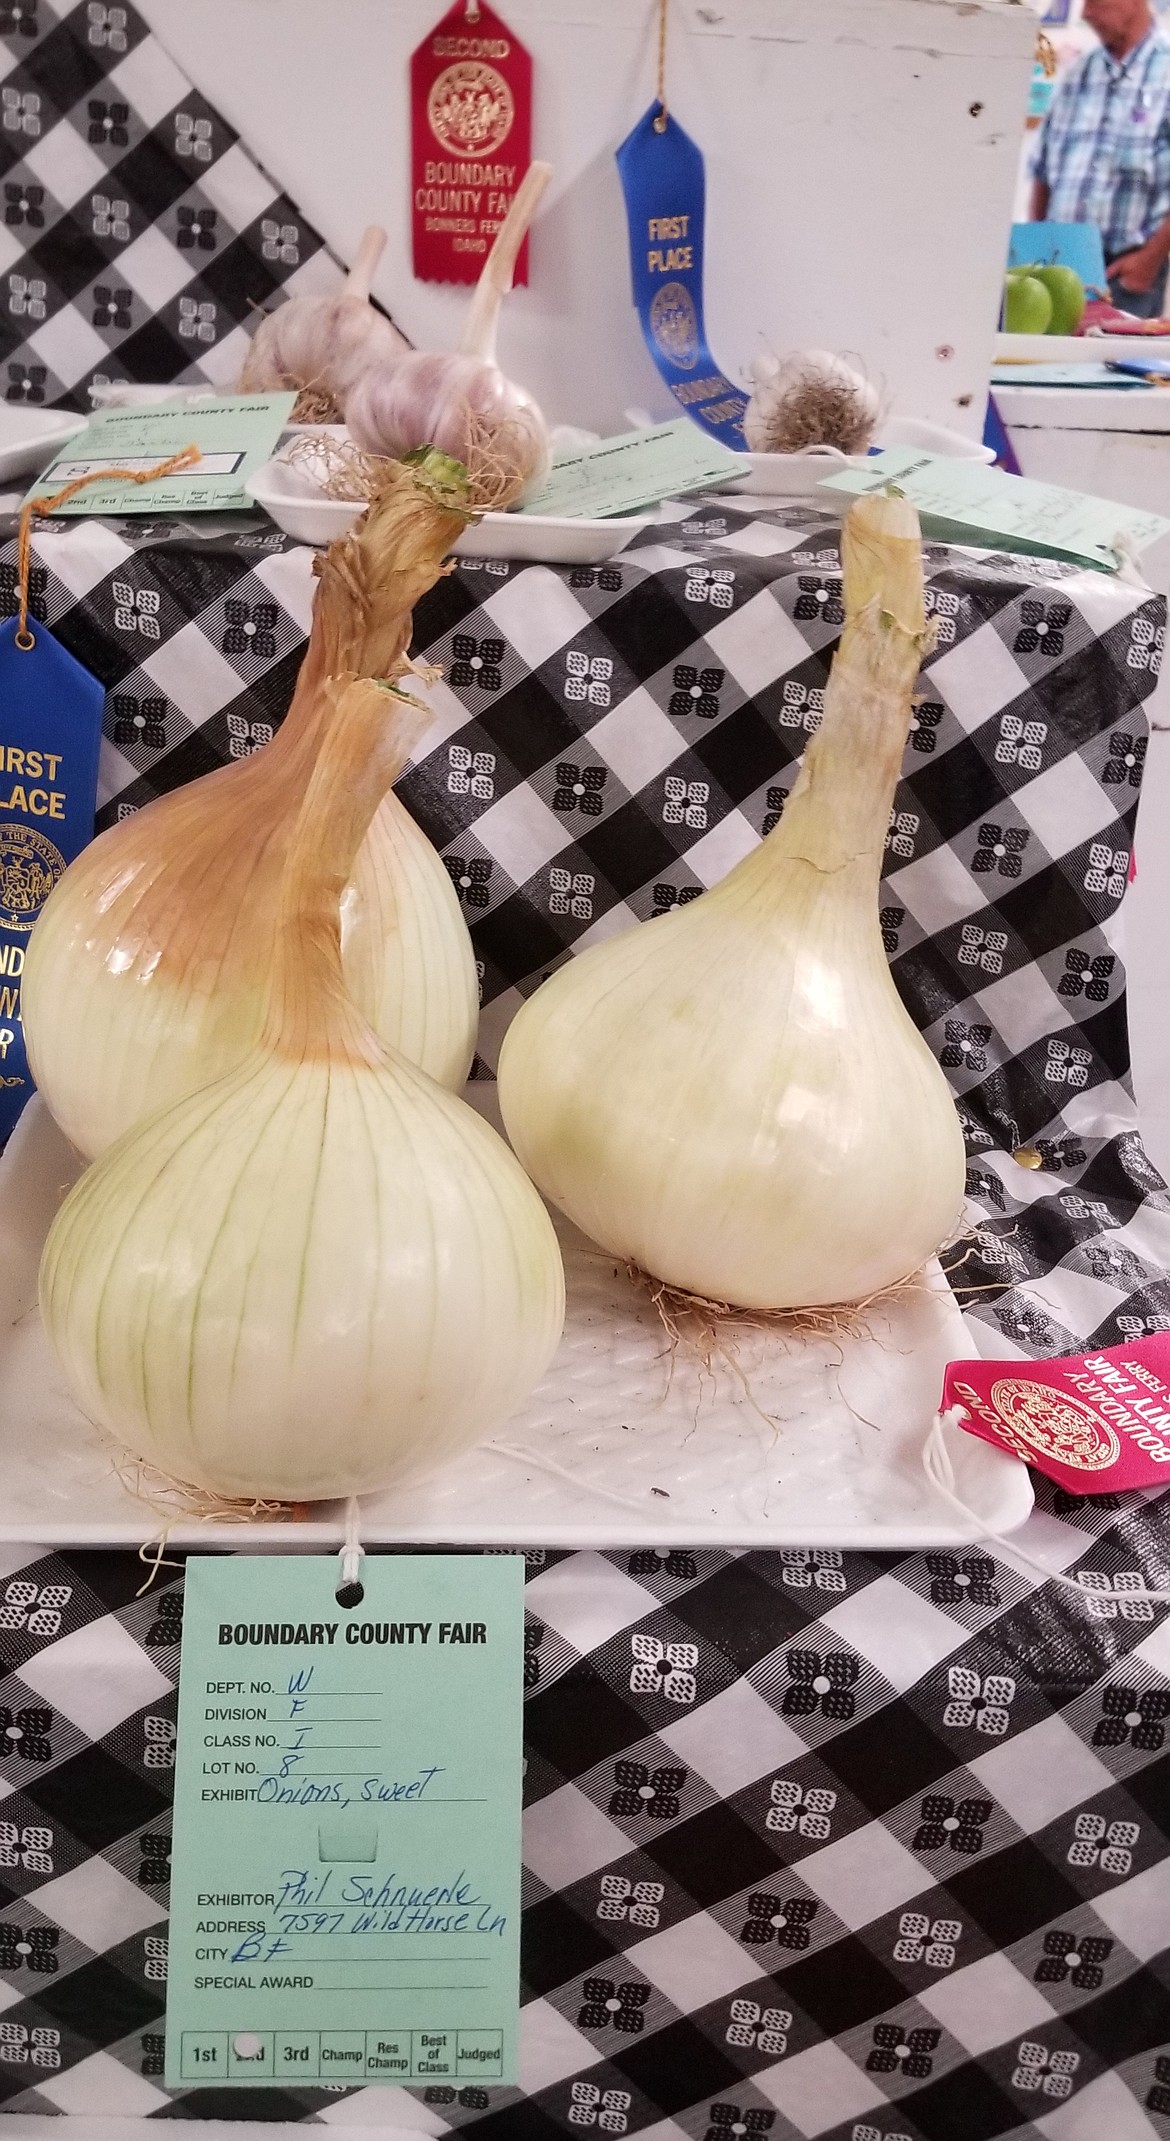 Photo by MANDI BATEMANThese large onions and garlic were prize winners.